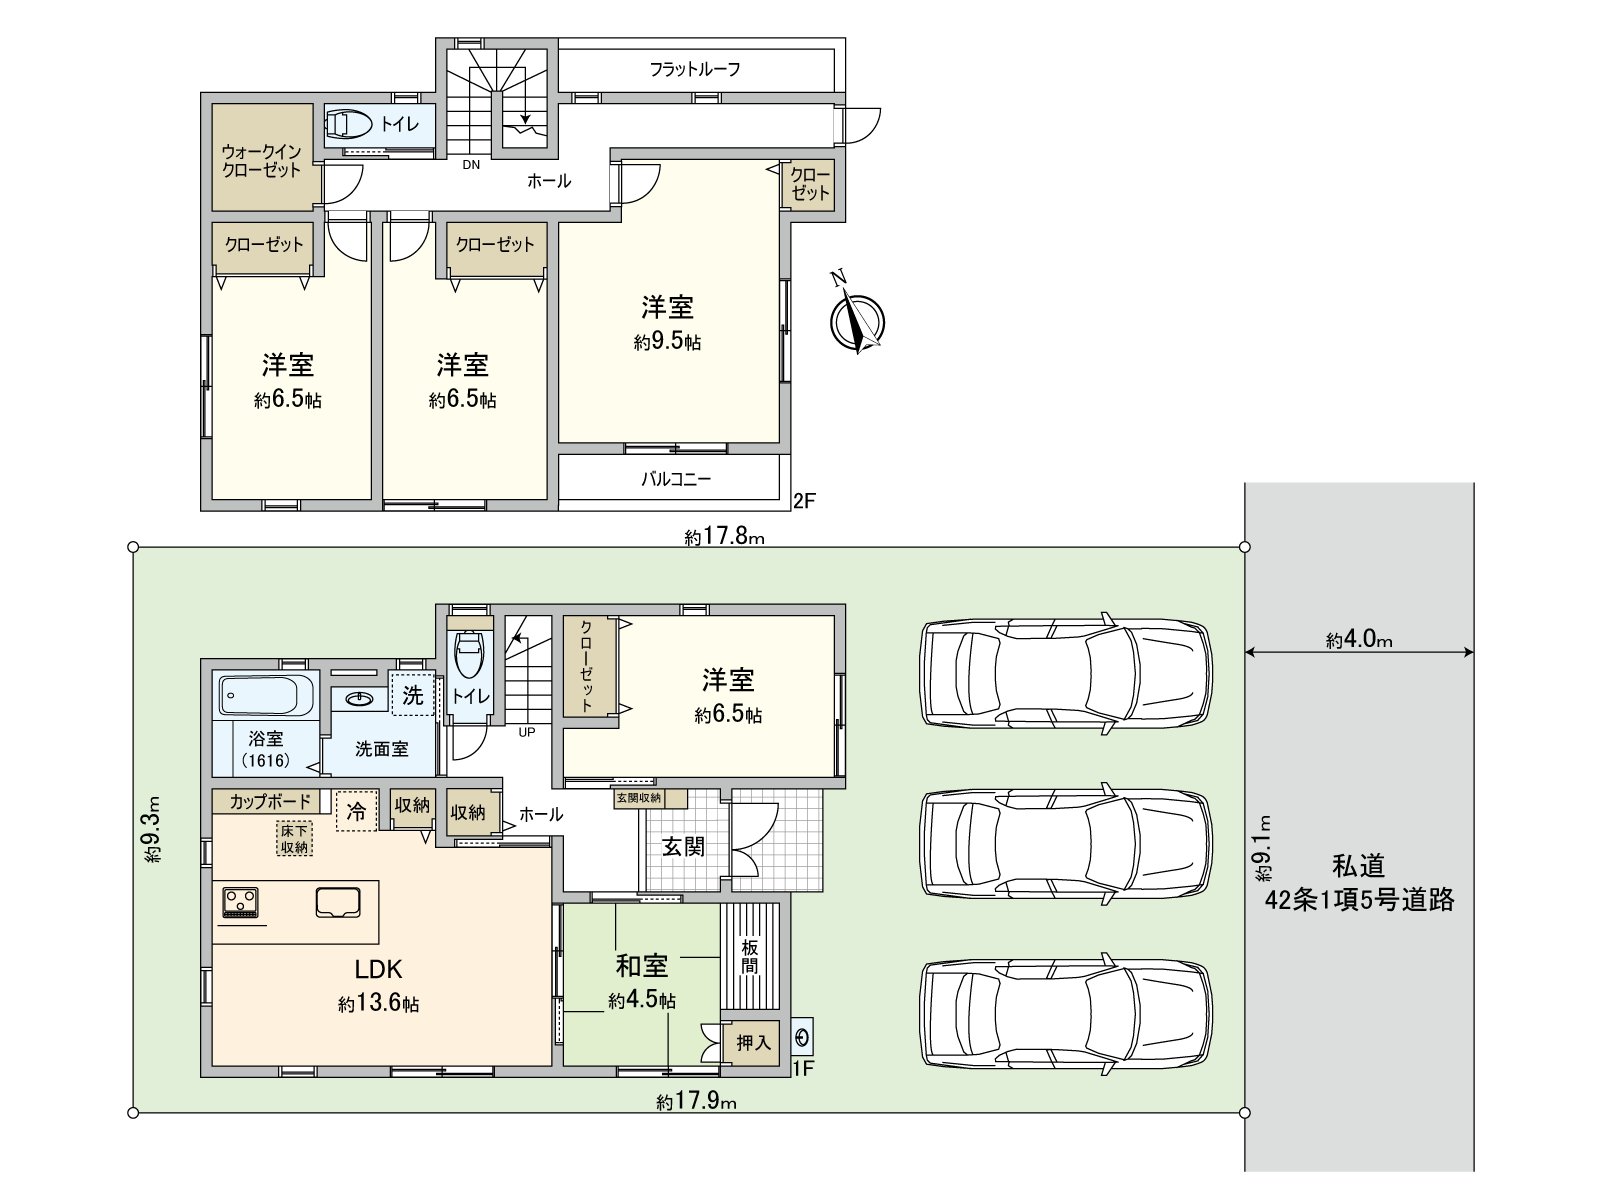 Floor plan (site figure)